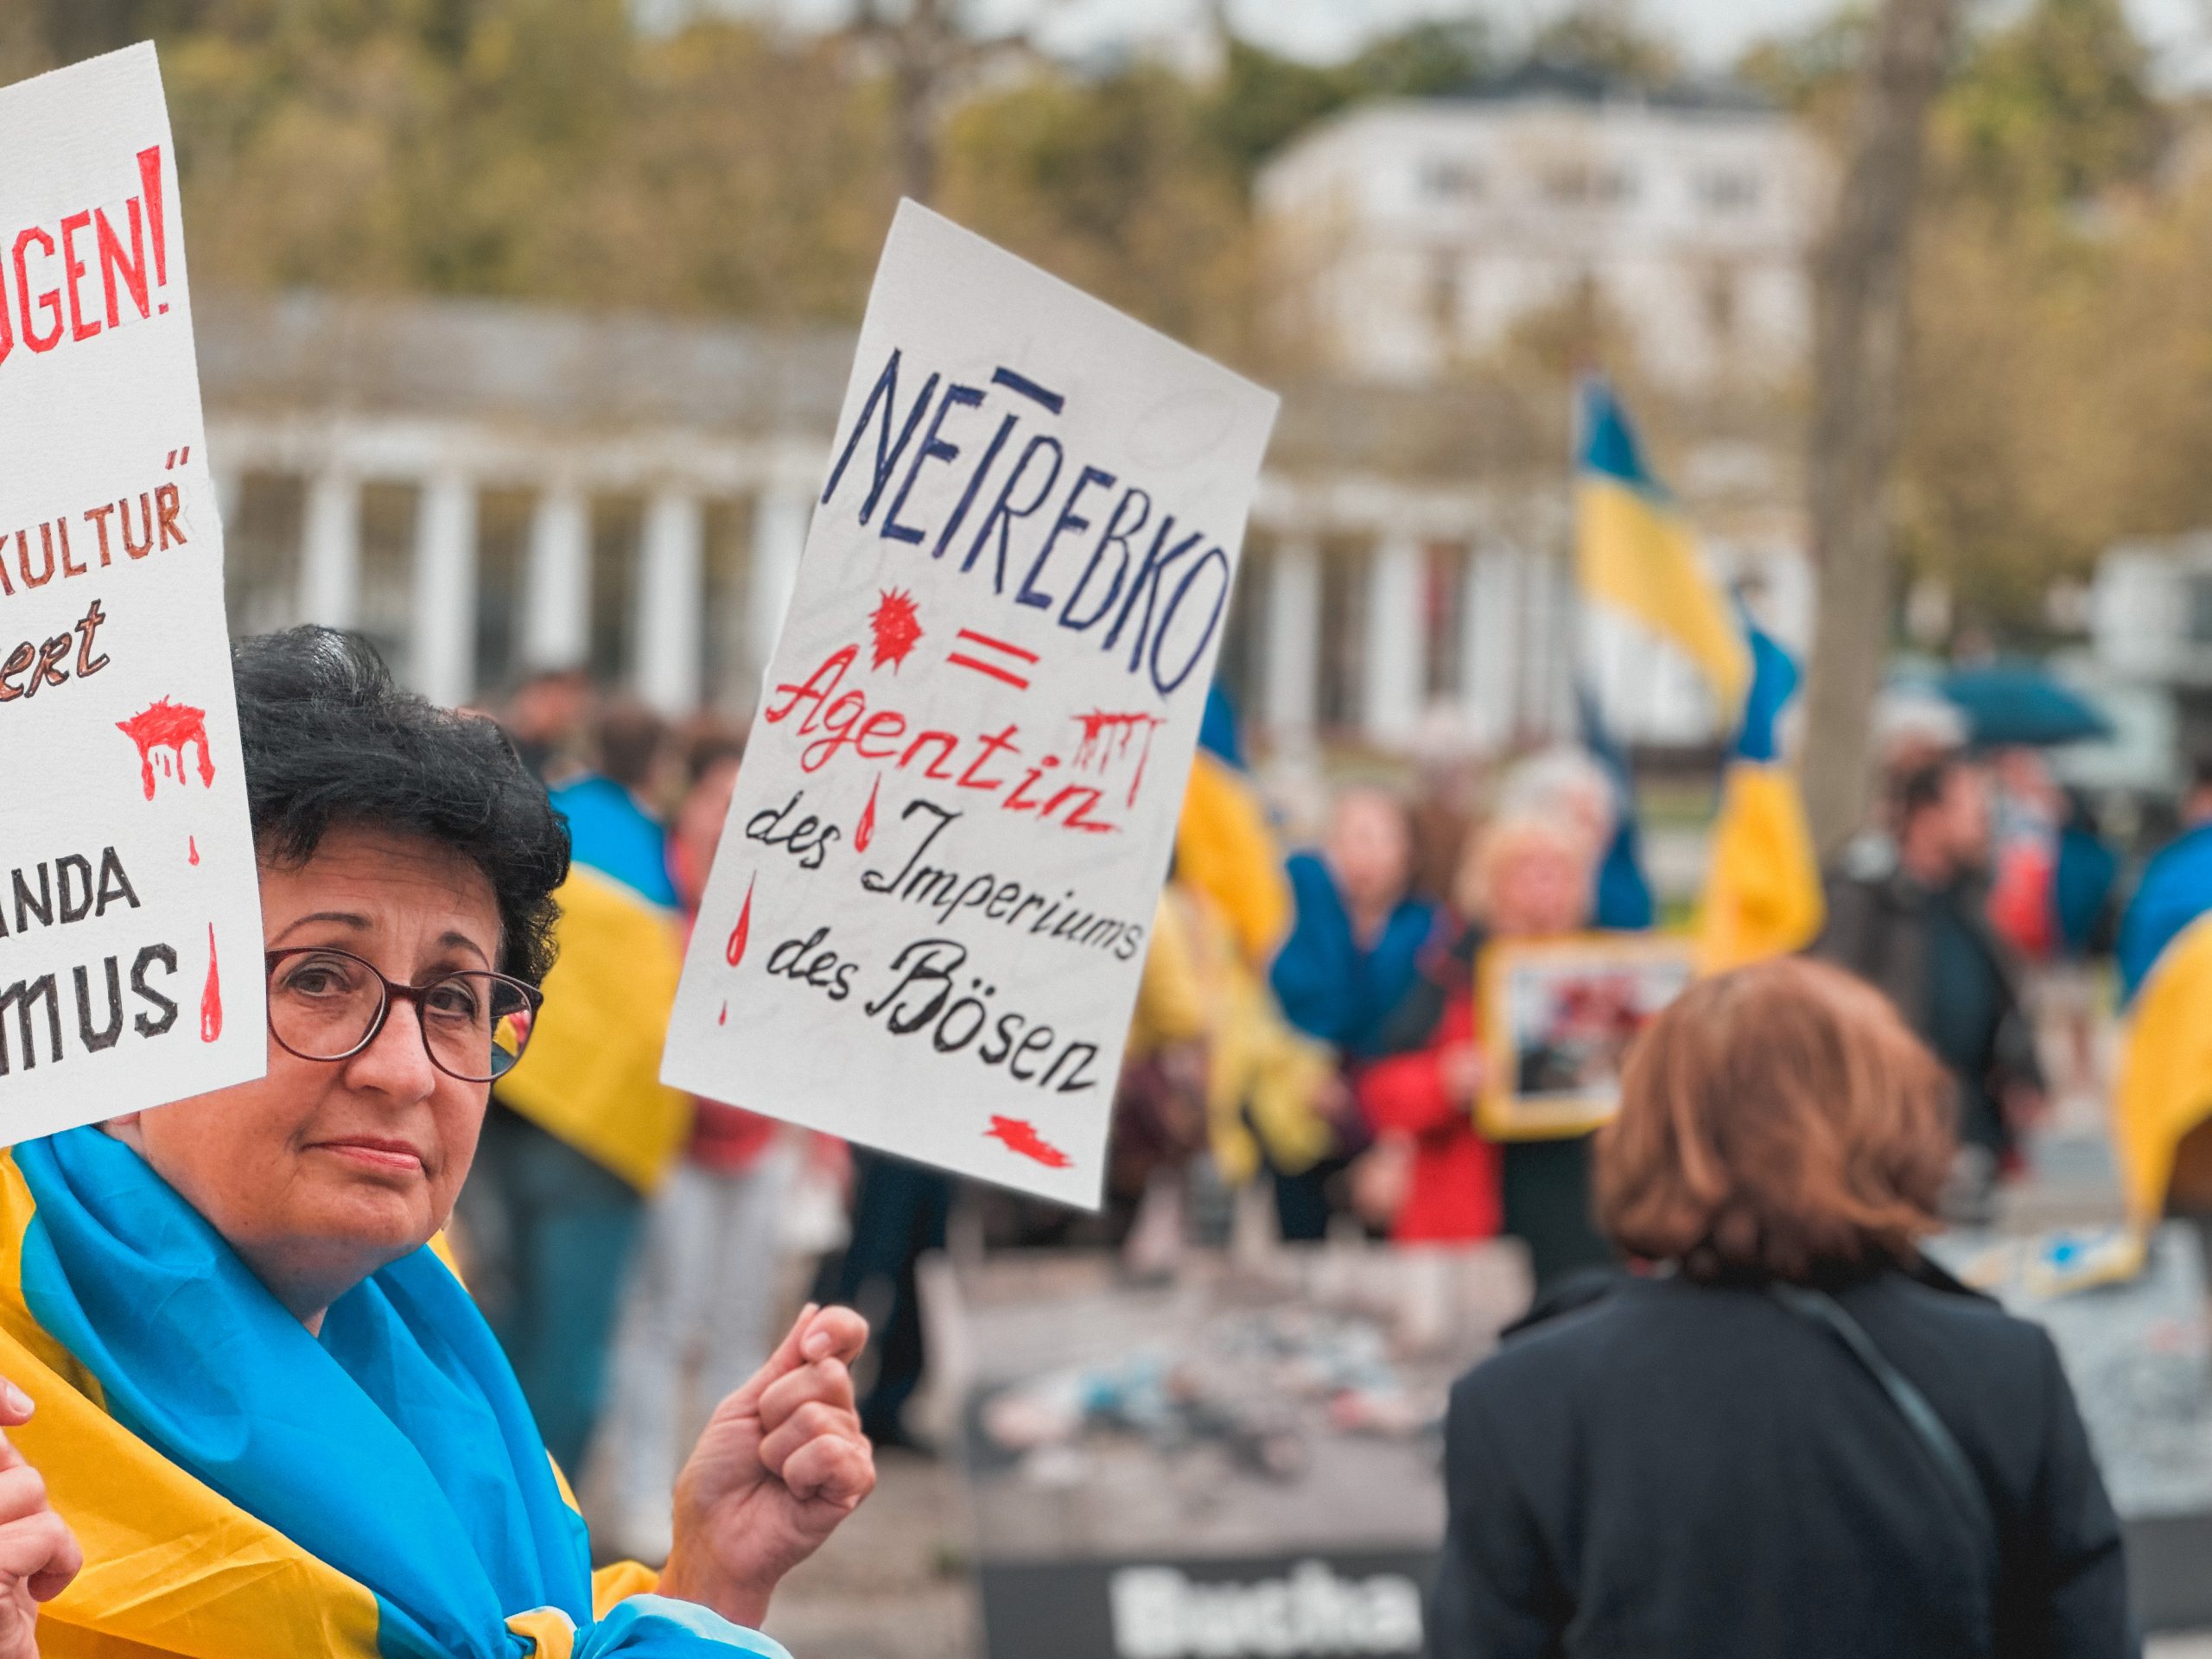 Über 25.000 Menschen zeichnen Petition gegen Netrebko-Auftritt in Berlin